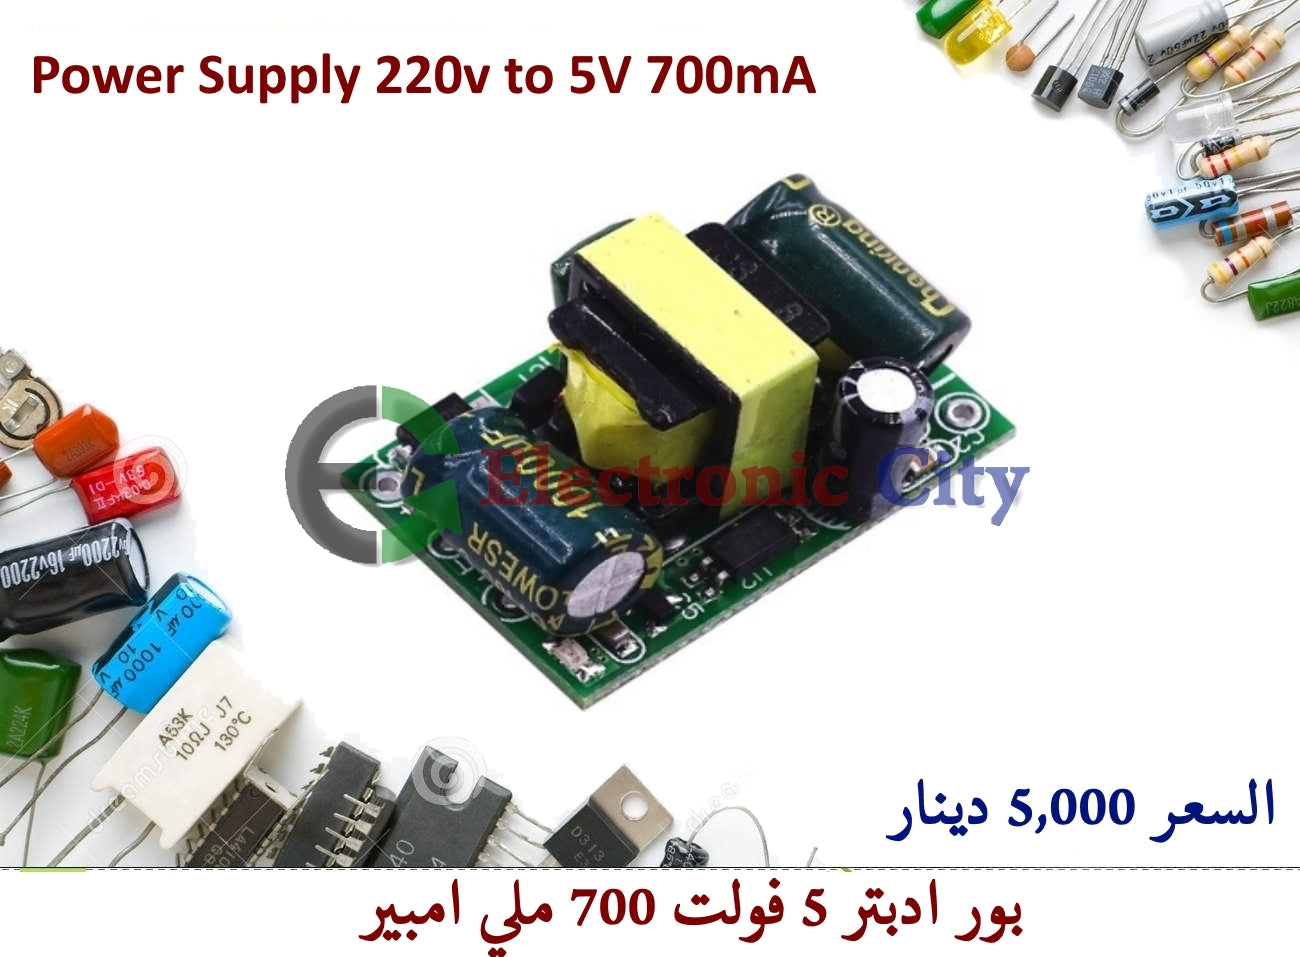 Power Supply 220v to 5V 700mA #P3 011075